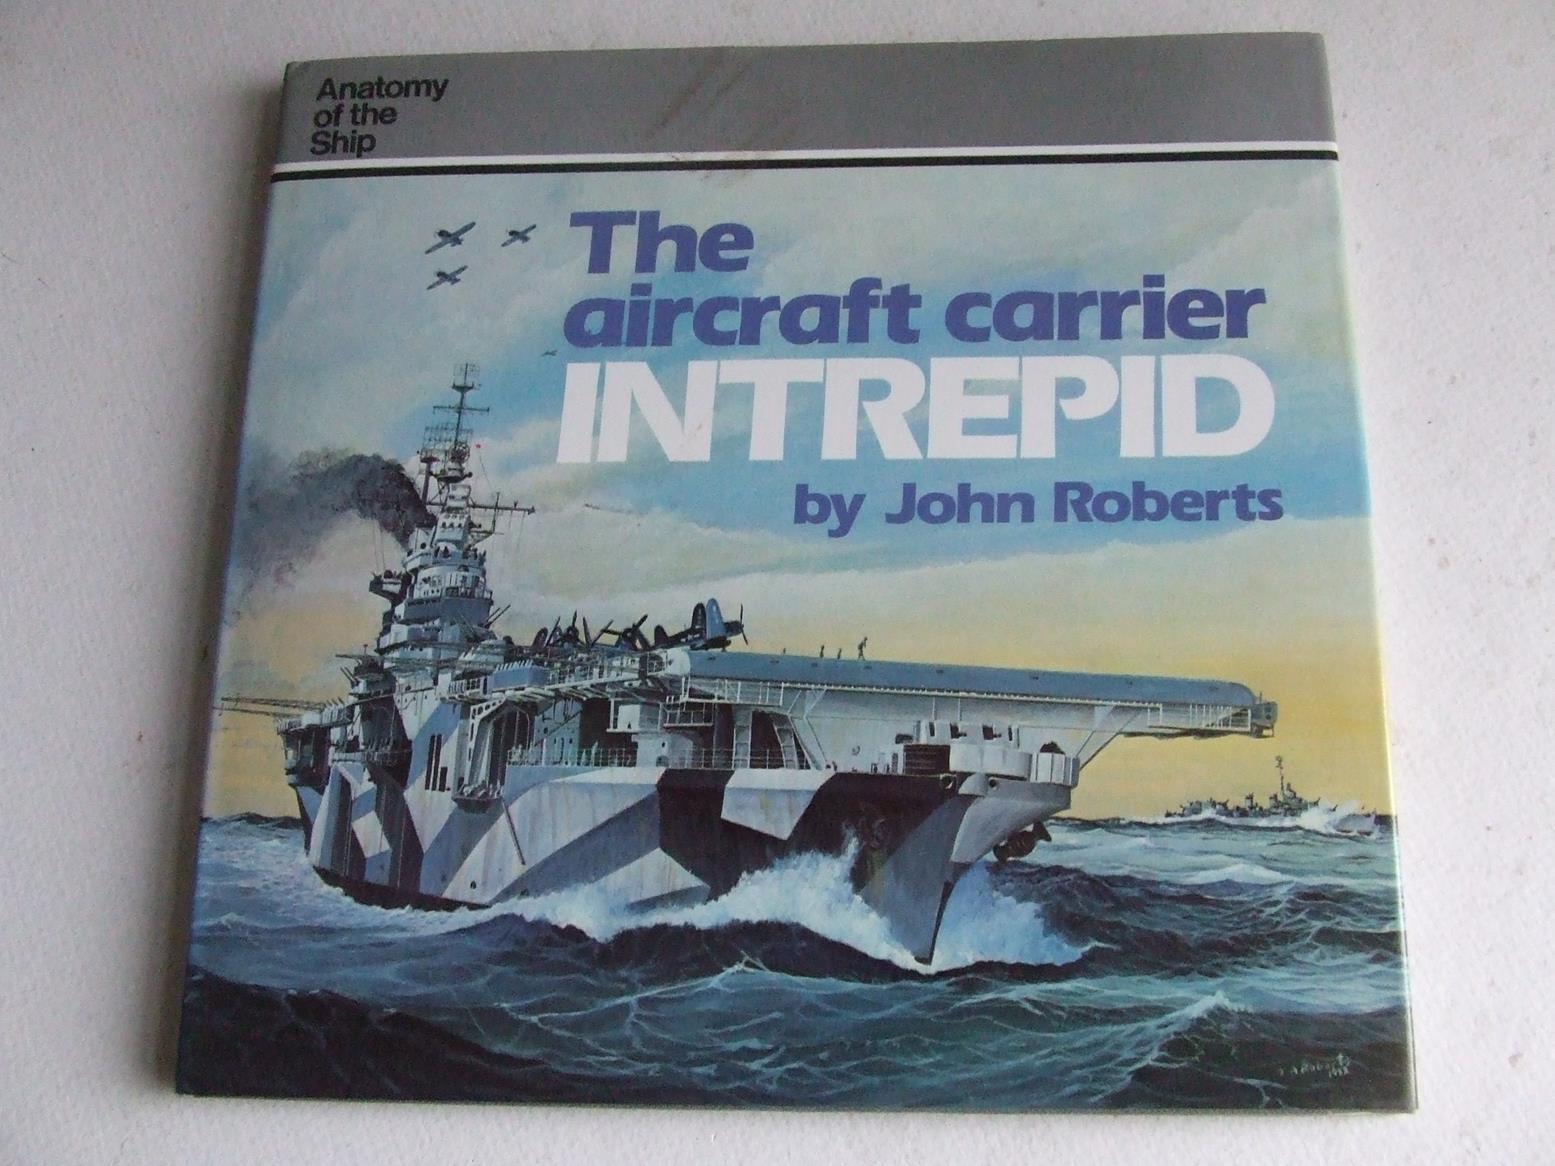 The Aircraft Carrier "Intrepid" [Essex class fleet carrier]